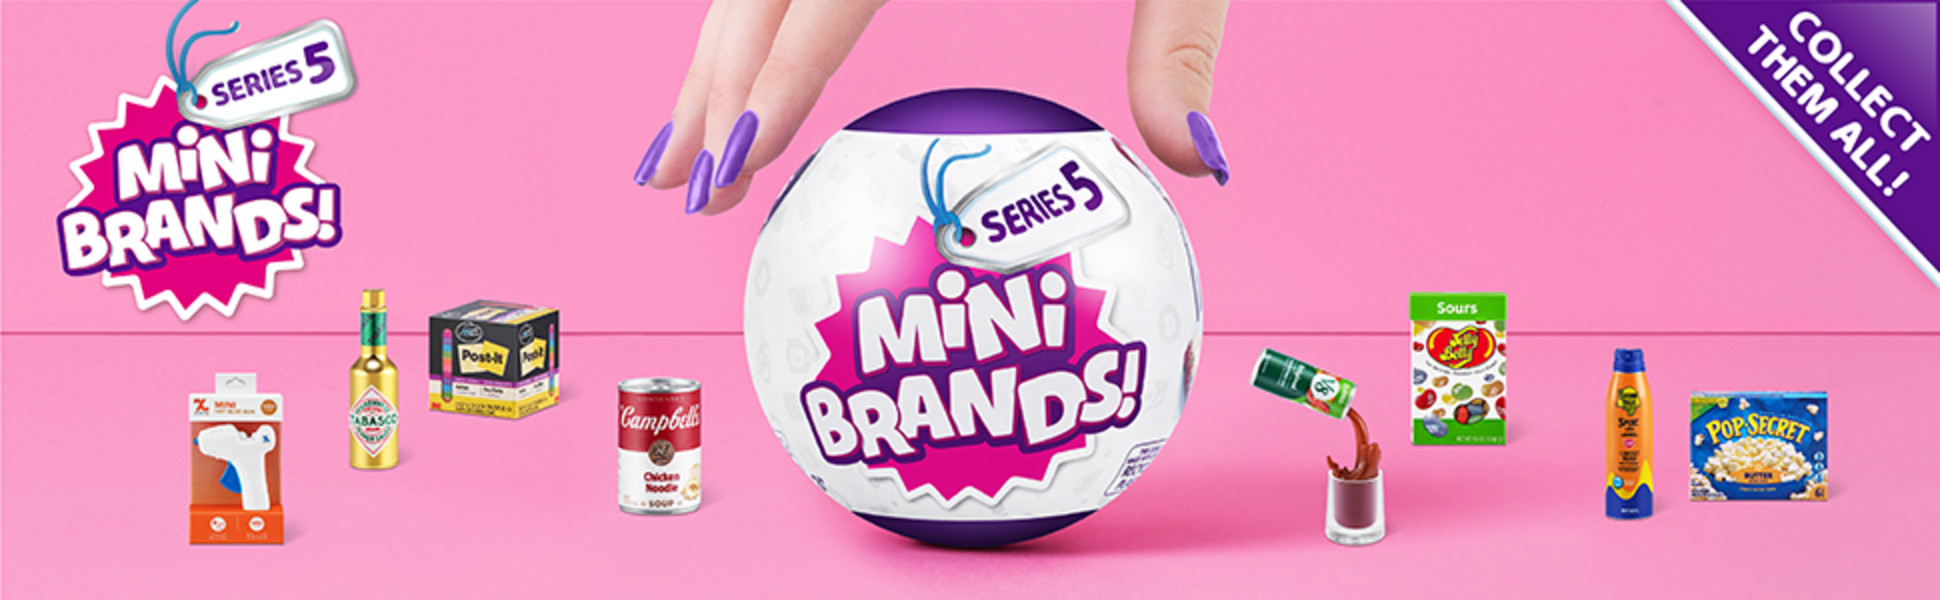 5 Surprise Mini Brands - Series 3 24pc Surprise Pack Advent Calendar  Limited Edition